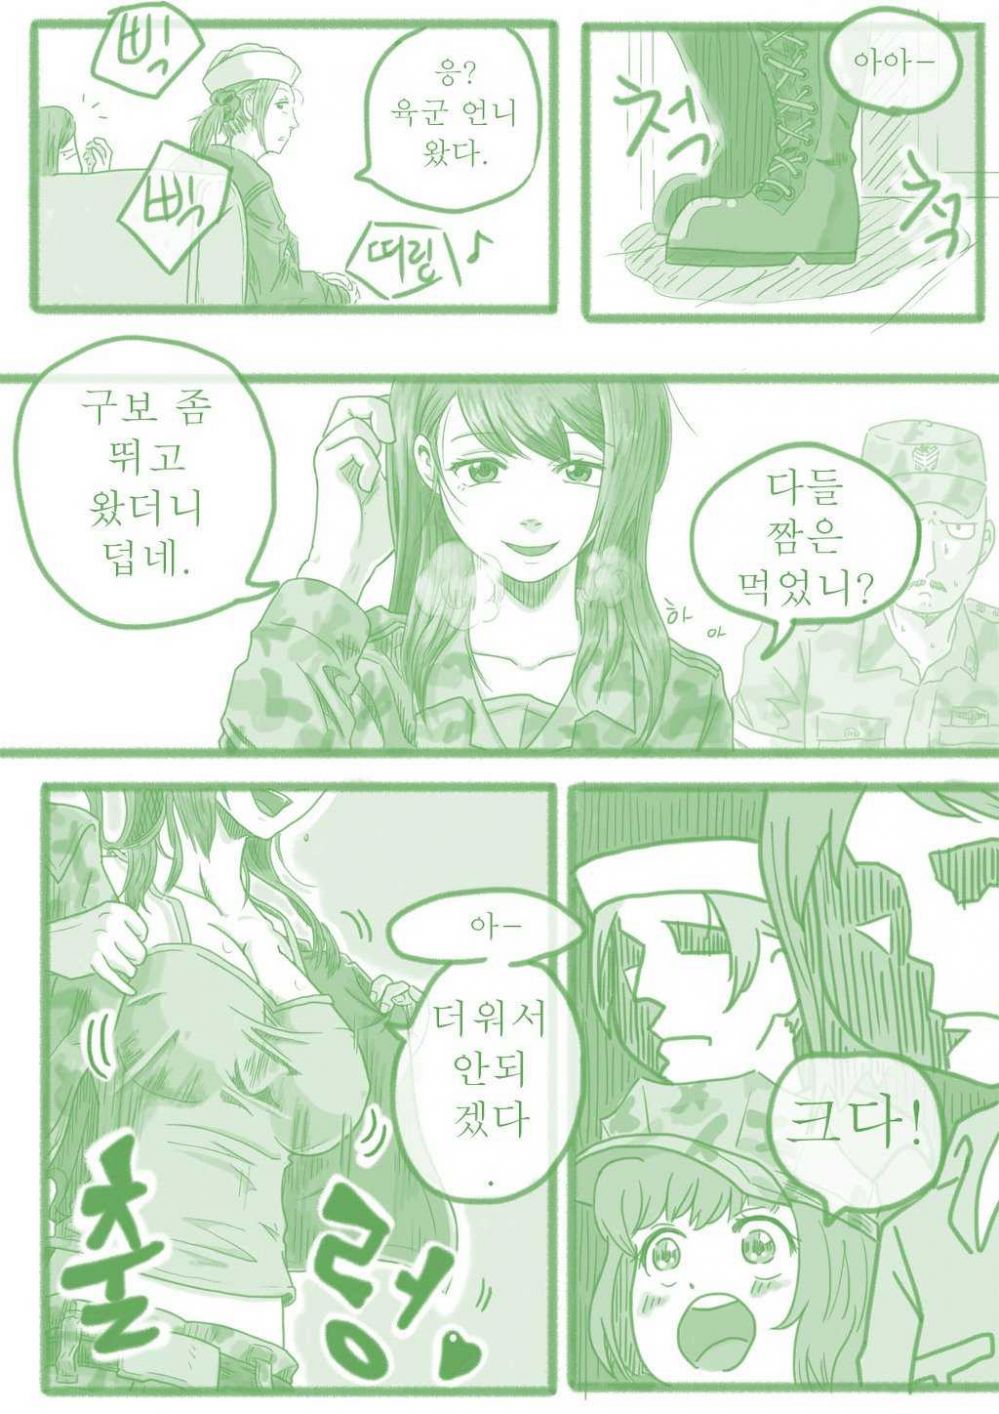 280b8e5c70821b406c1d4a524cf1e4a3.jpeg : 한국 군대 모에화 만화